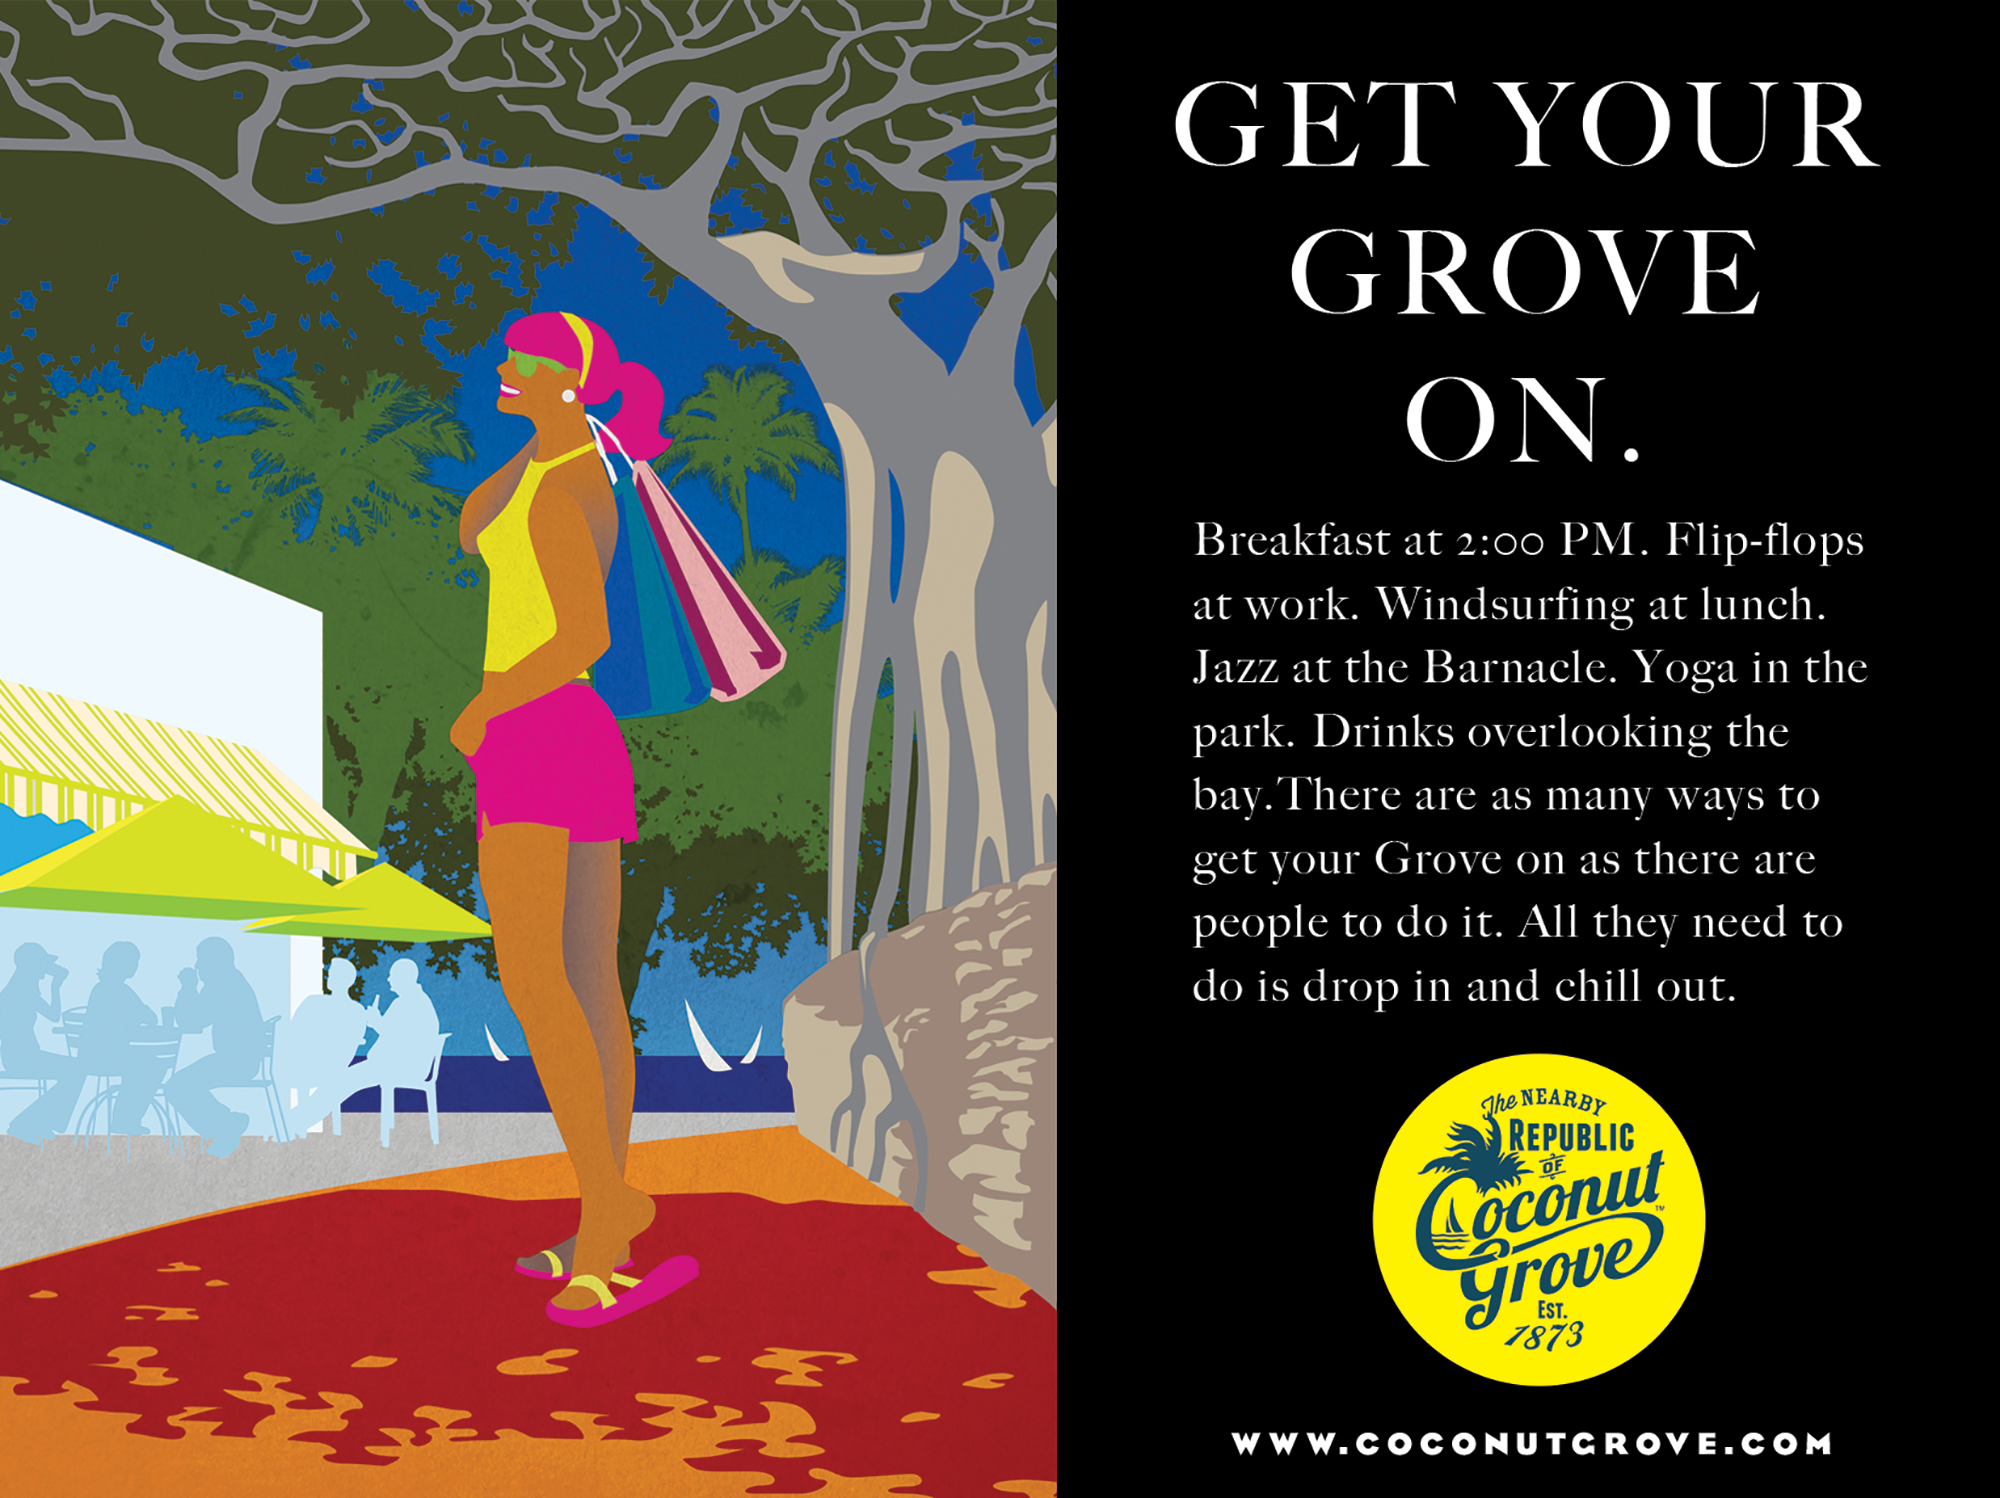 Coconut Grove Miami Florida Local Advertising Campaign